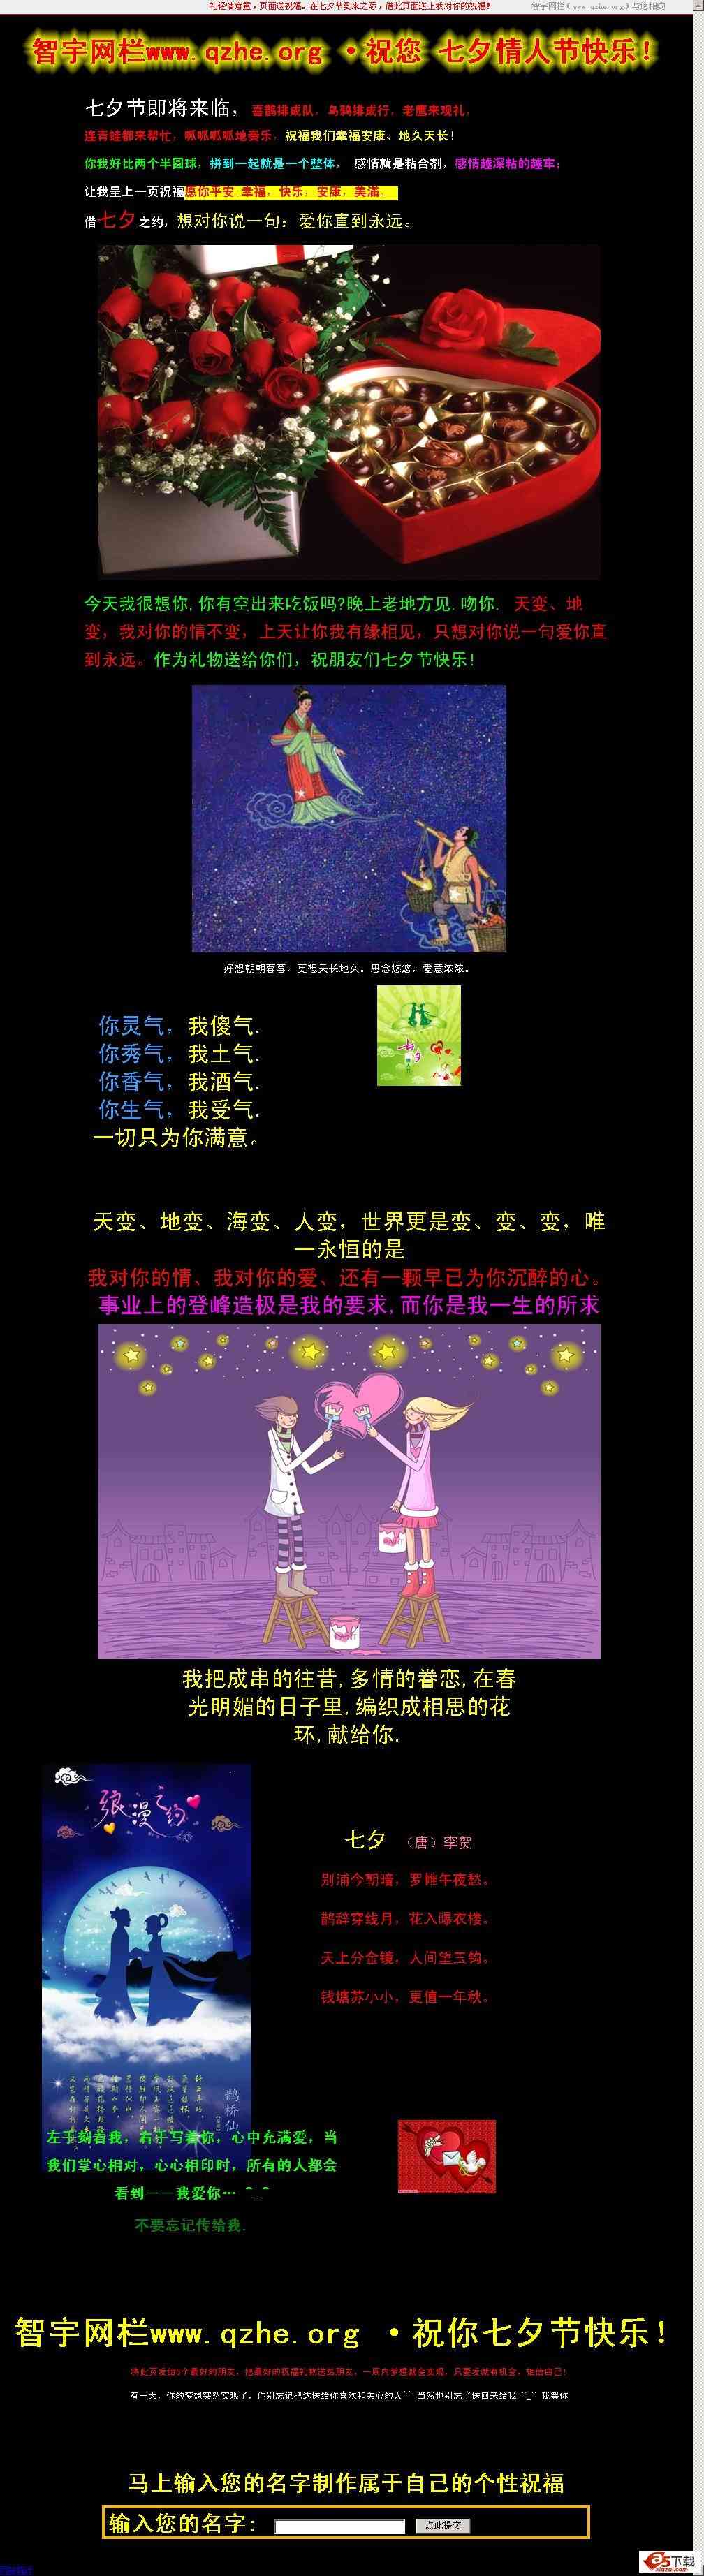 2012七夕情人节祝福网页源码 v0.1插图